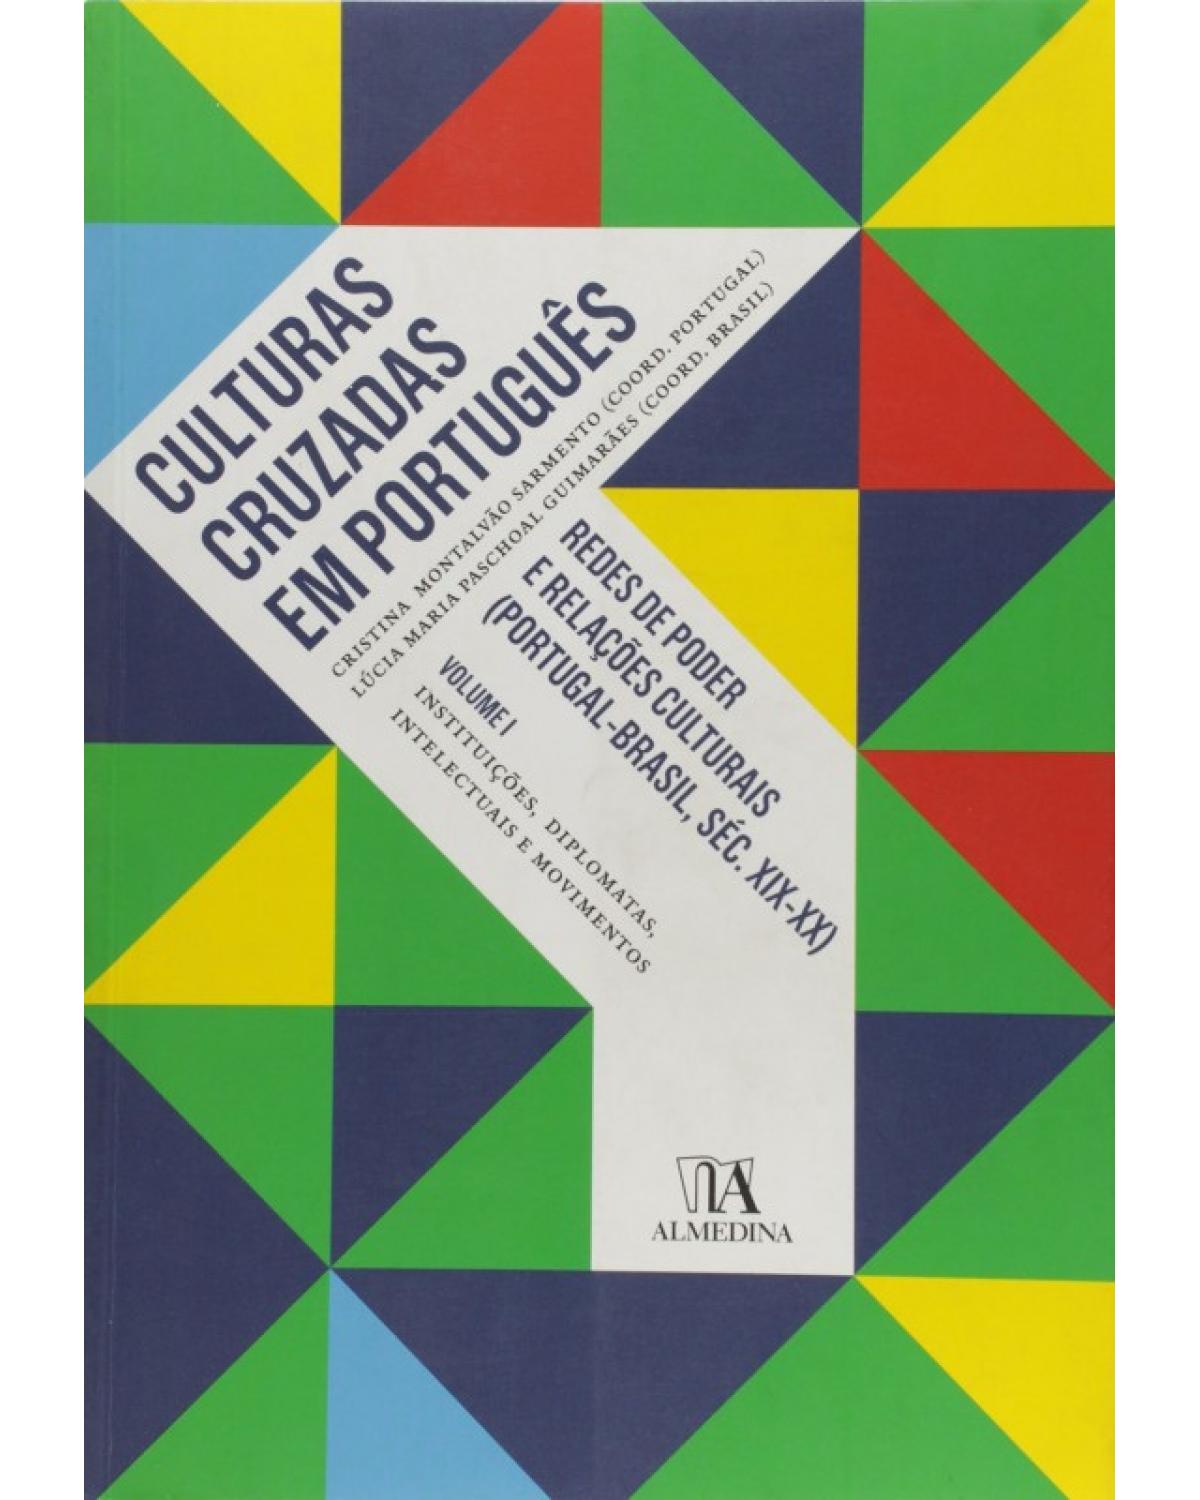 Culturas cruzadas em português - Volume 1: redes de poder e relações culturais (Portugal - Brasil, séc. XIX e XX) - Instituições, diplomatas, intelectuais e movimentos - 1ª Edição | 2010